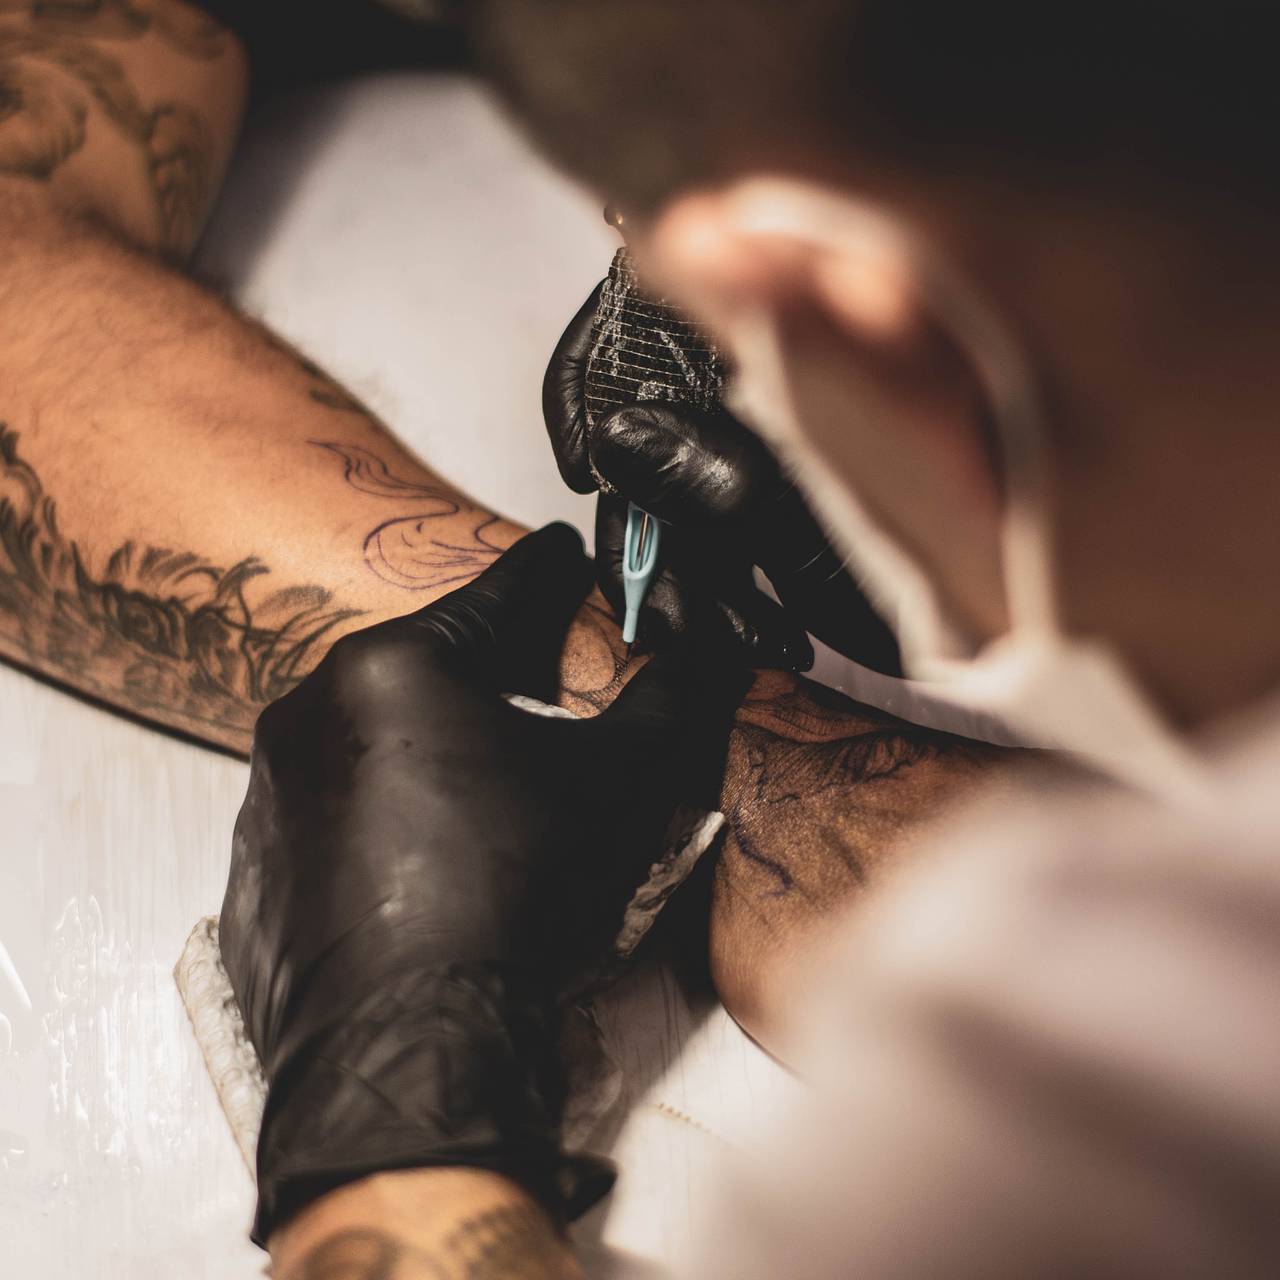 Татуировки и их возможные медицинские последствия